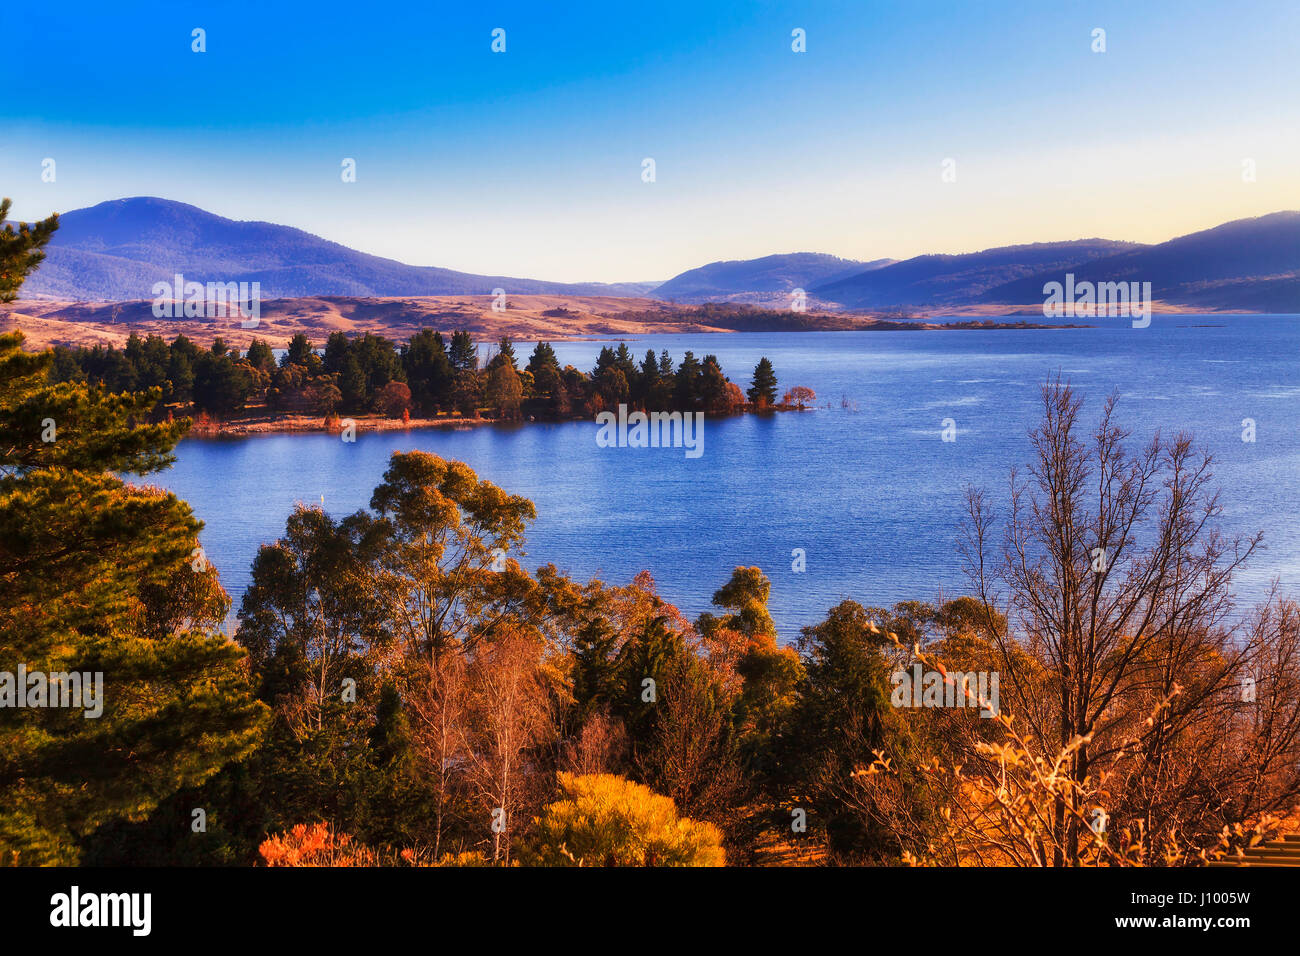 Acque blu del lago Jindabyne circondato da montagne innevate national park e luminose fronde di alberi in vista in elevazione a caldo la mattina dolci raggi del sole. Foto Stock